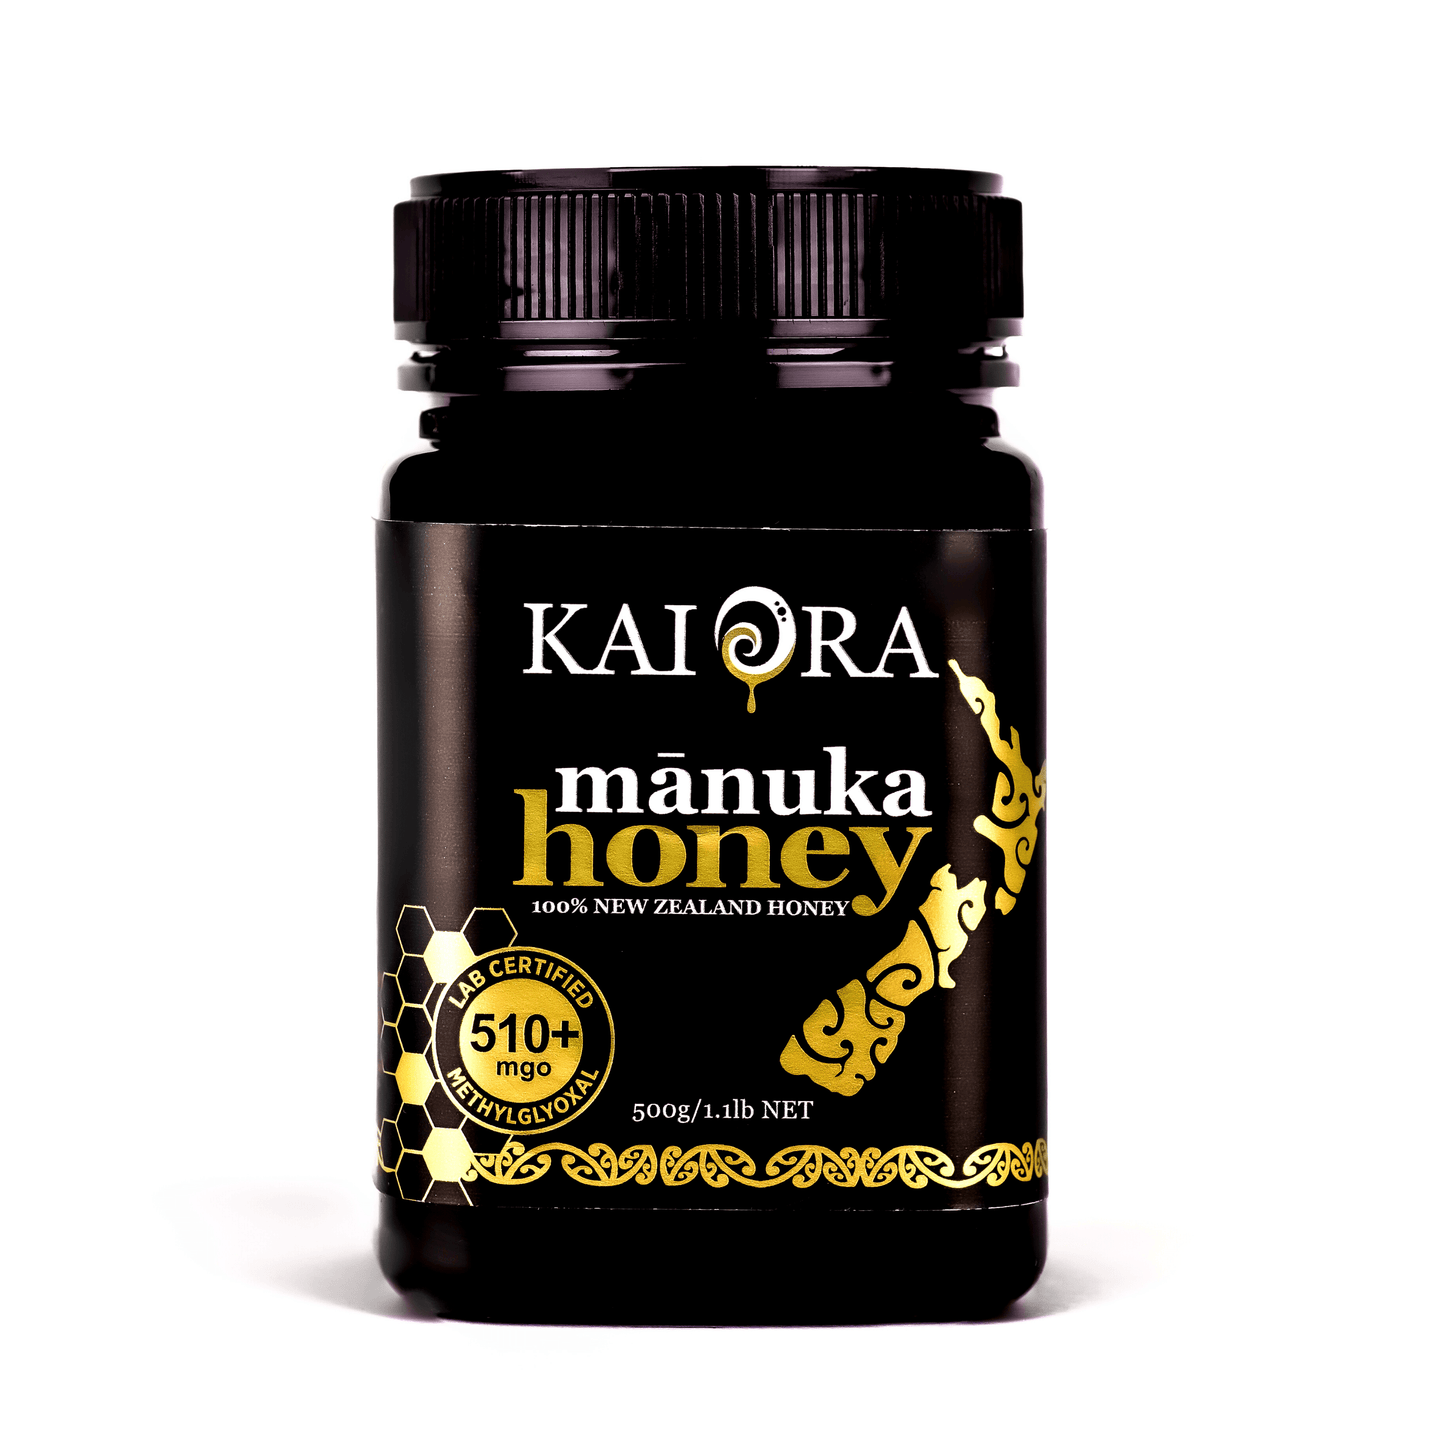 510+ MGO Manuka Honey <br>Kai Ora Black Label - Kai Ora Honey Limited, New Zealand